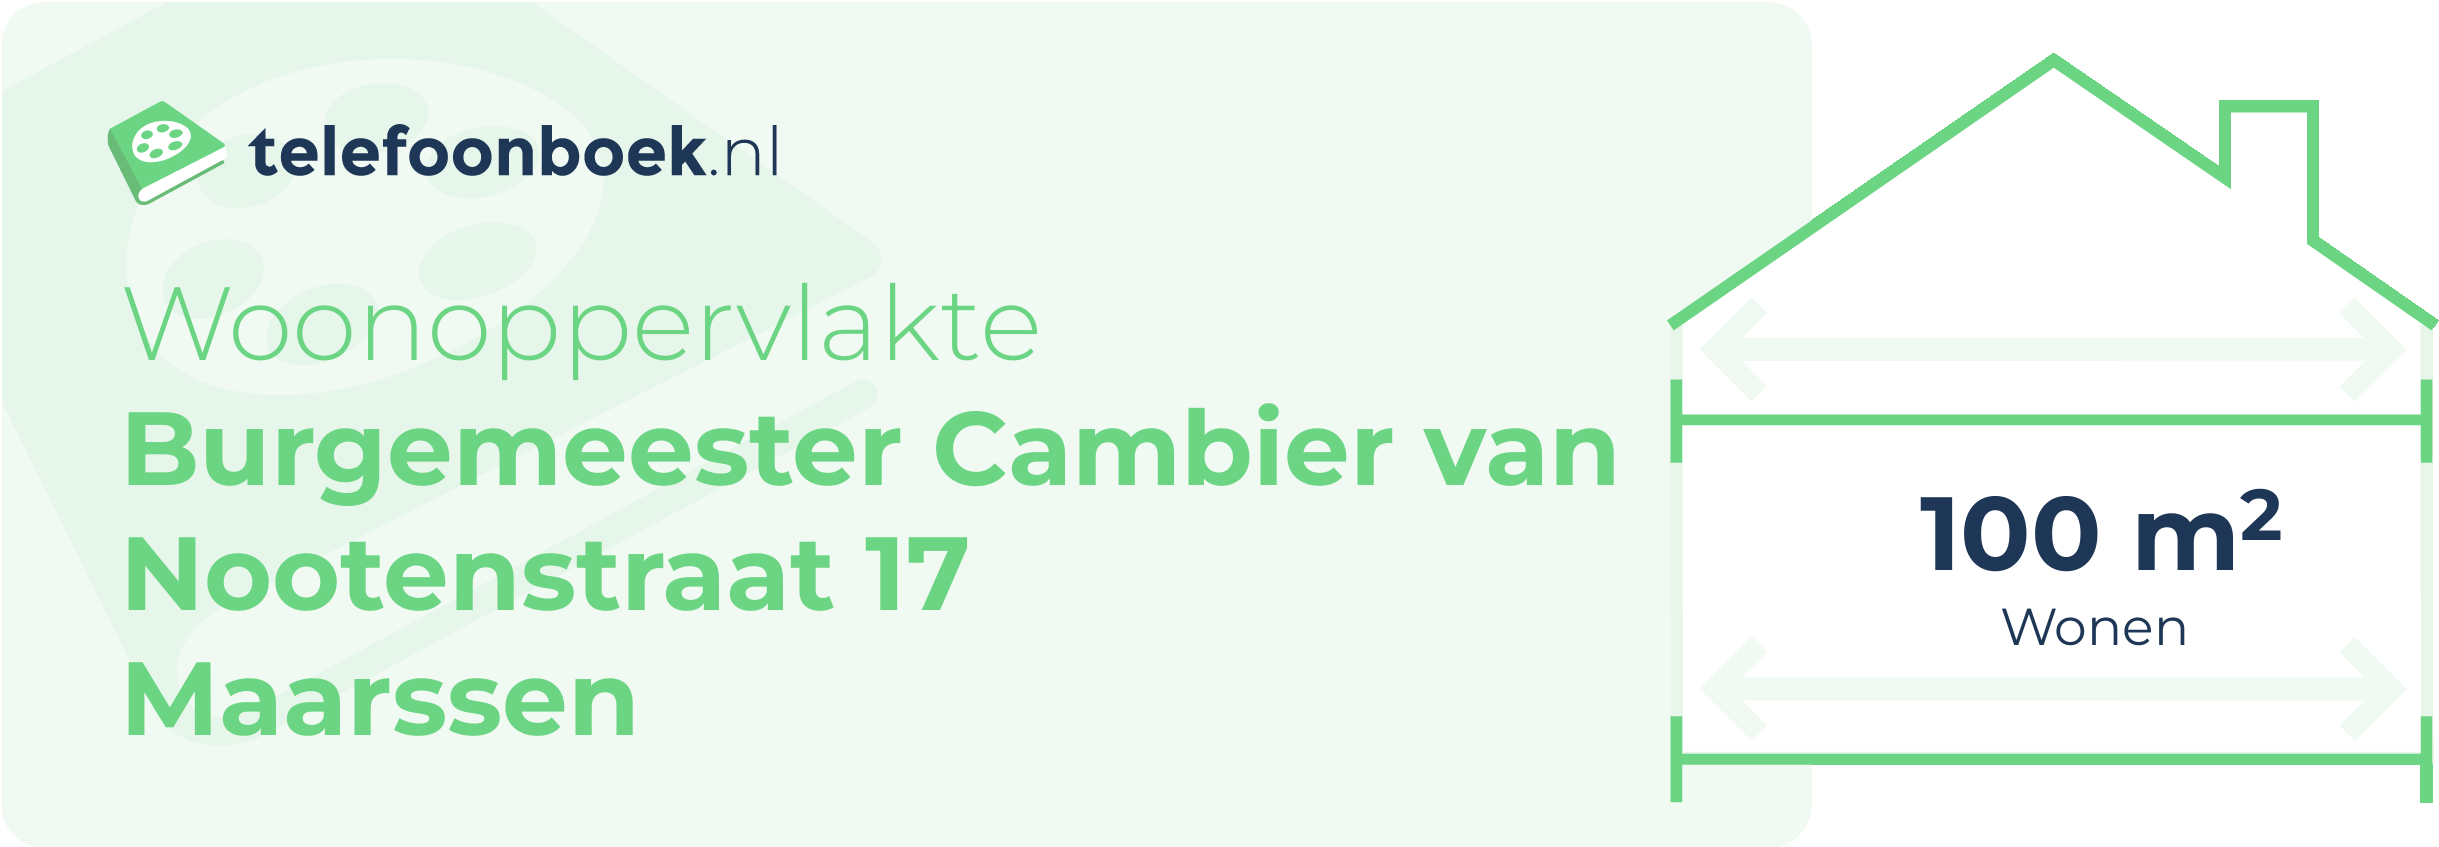 Woonoppervlakte Burgemeester Cambier Van Nootenstraat 17 Maarssen